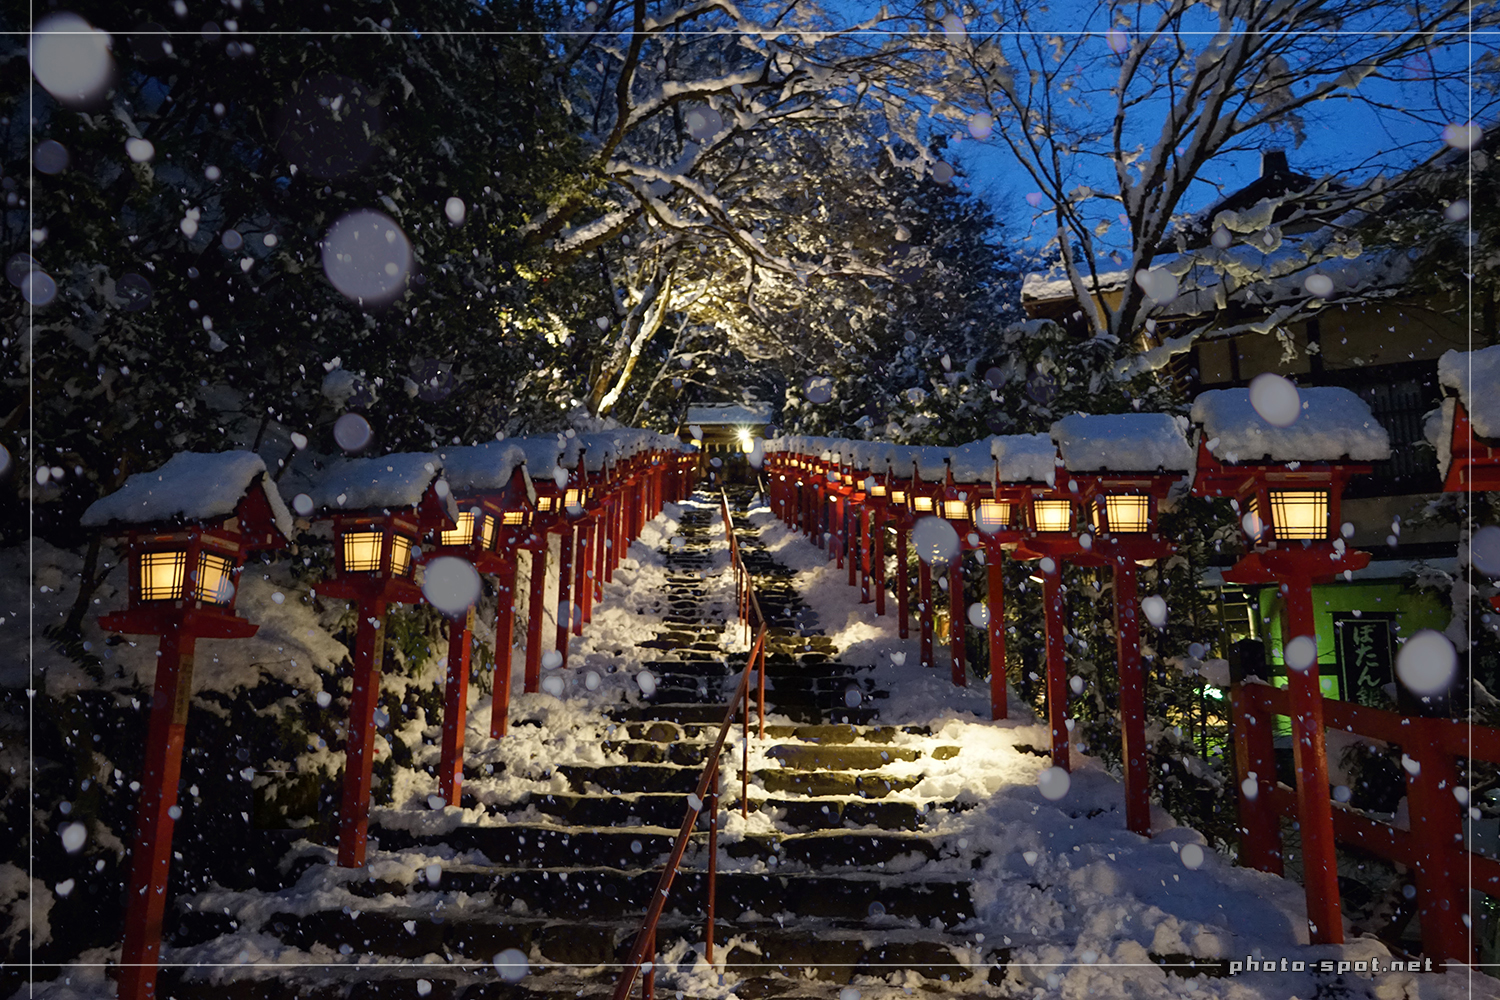 雪の貴船神社 ライトアップされた参道石段で雪の玉ボケ写真撮影